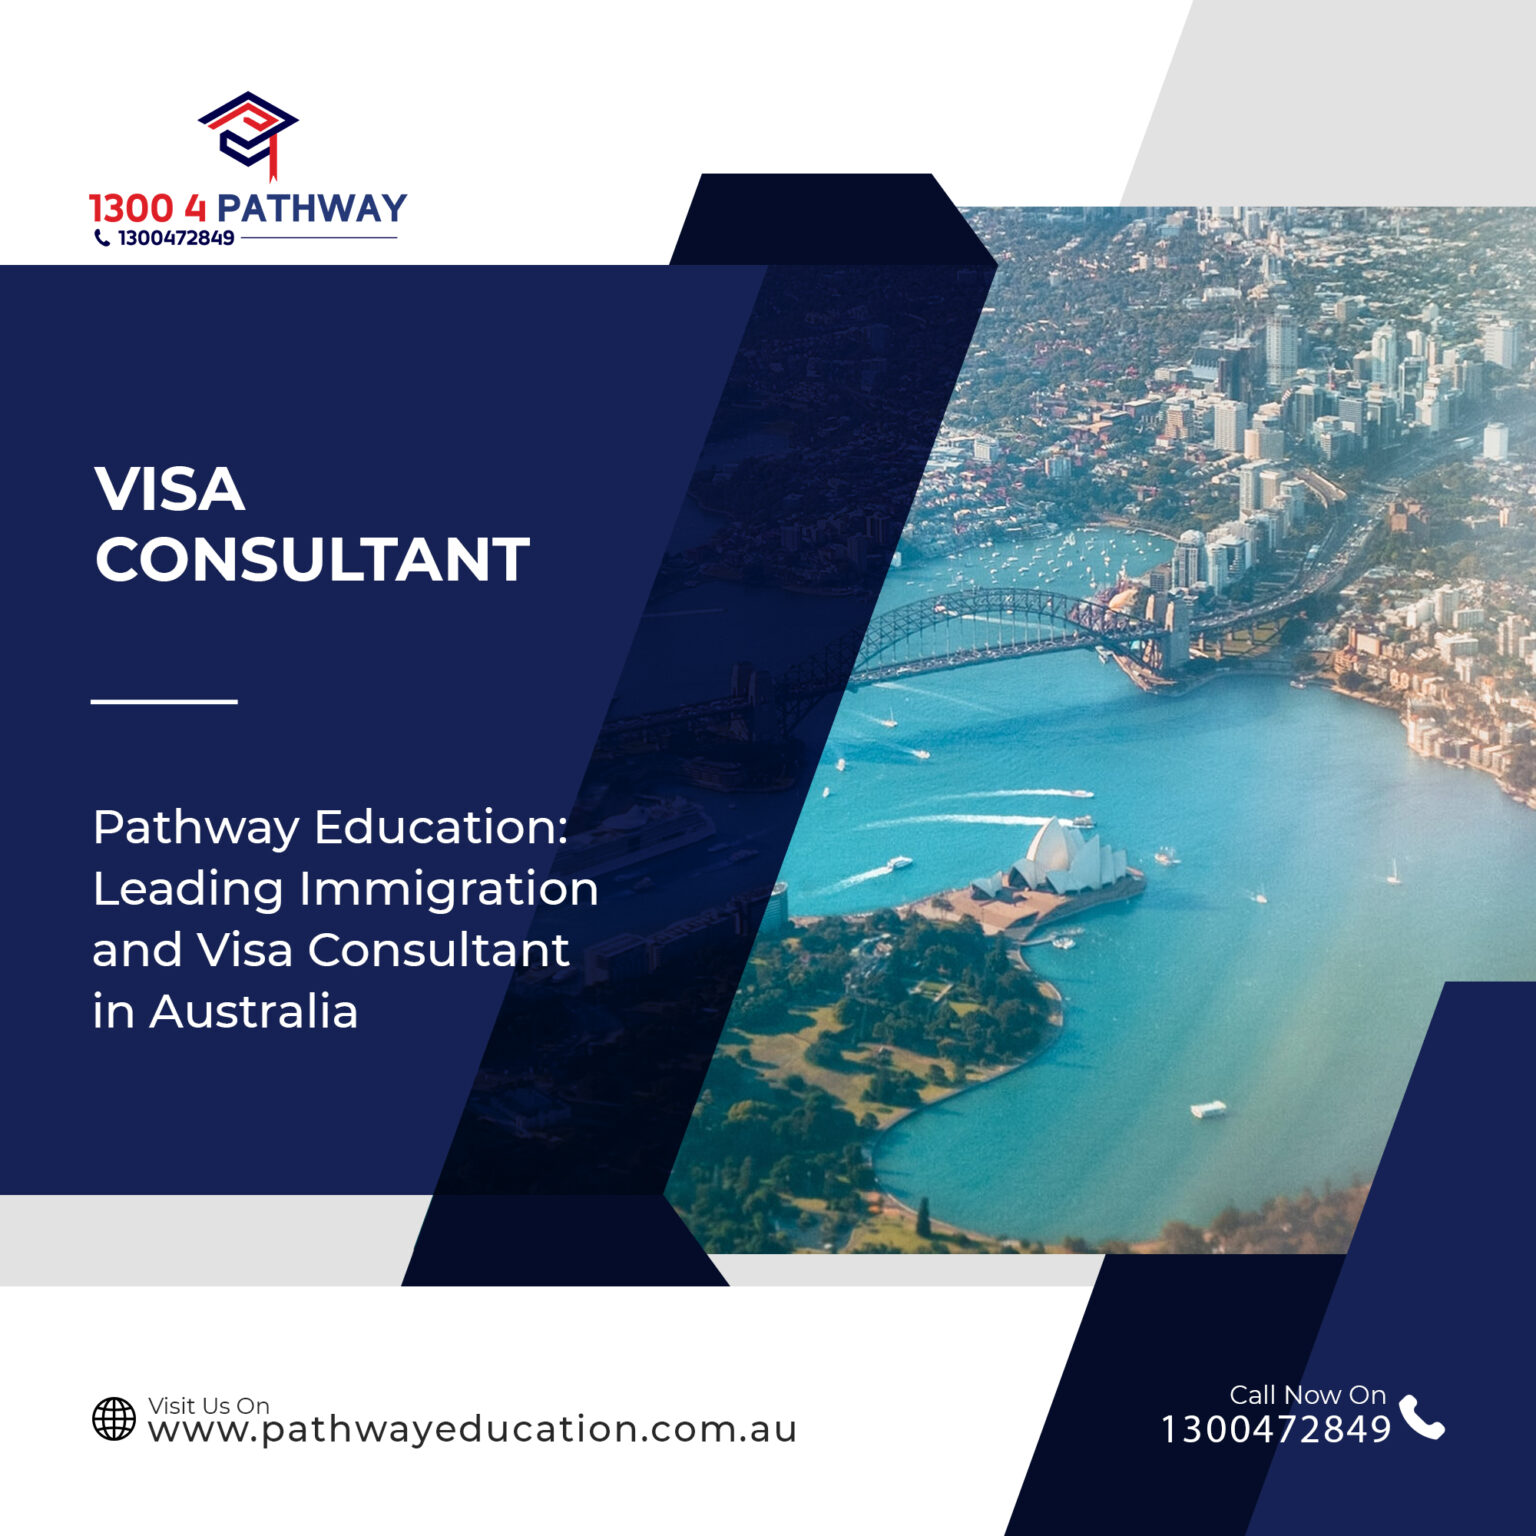 Australia Immigration and Visa Consultant in 2022